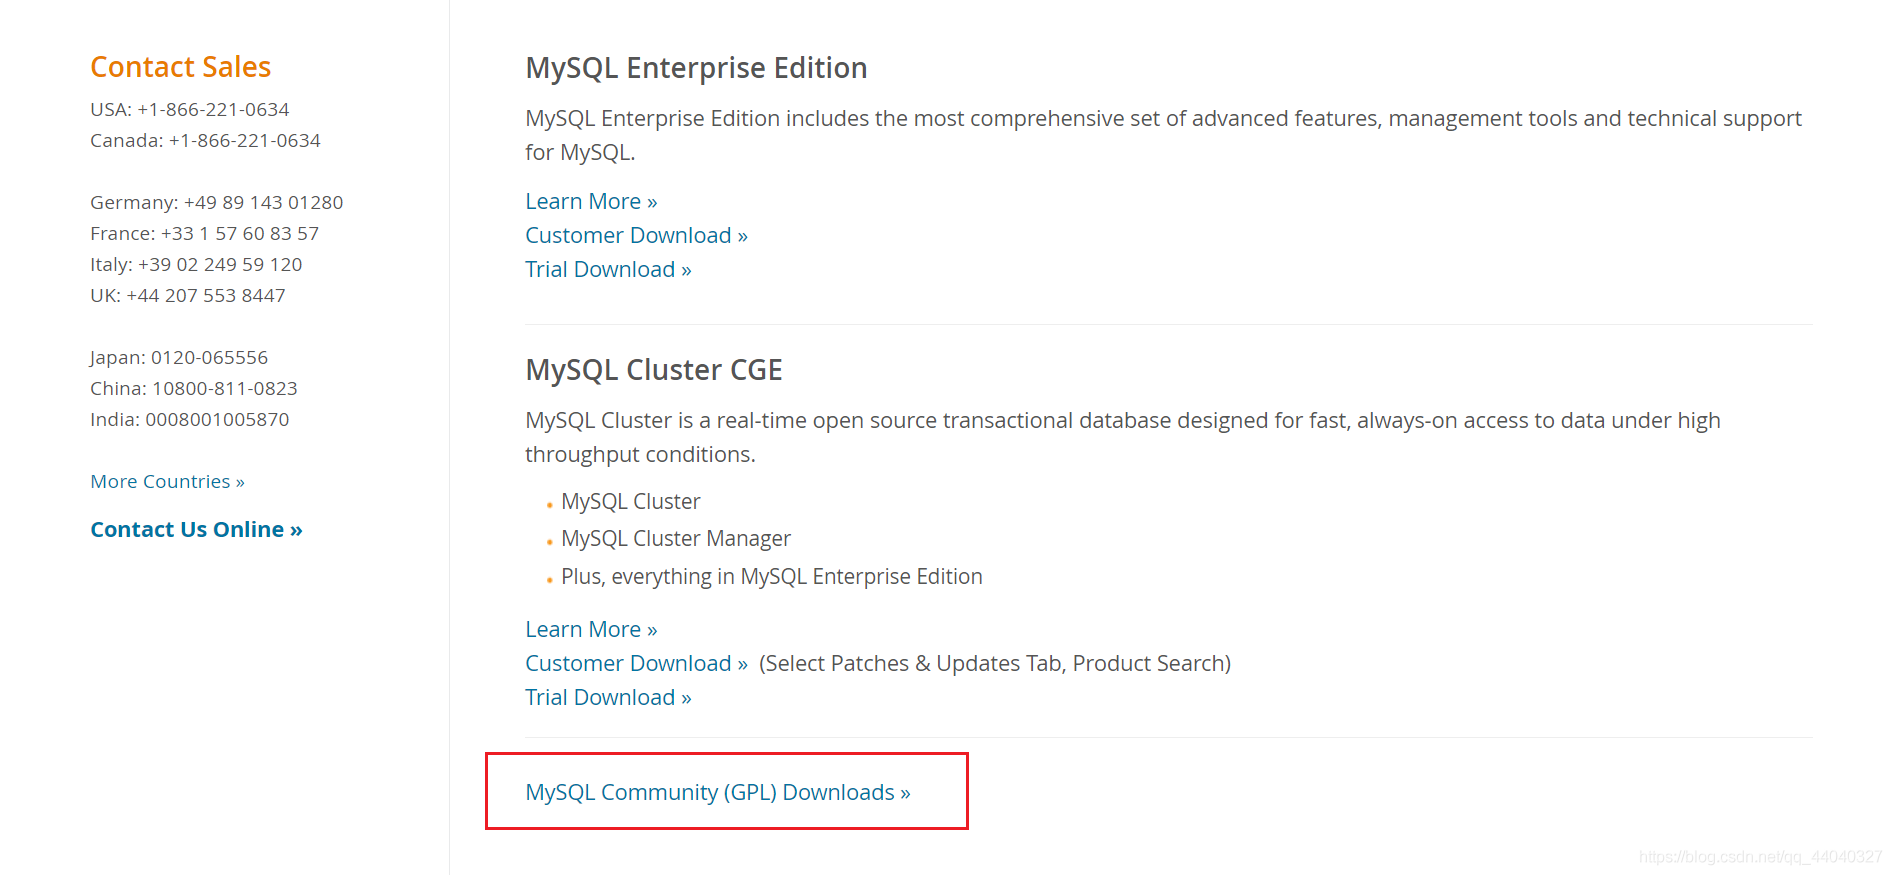 下载安装MySQL 8.0.22的方法